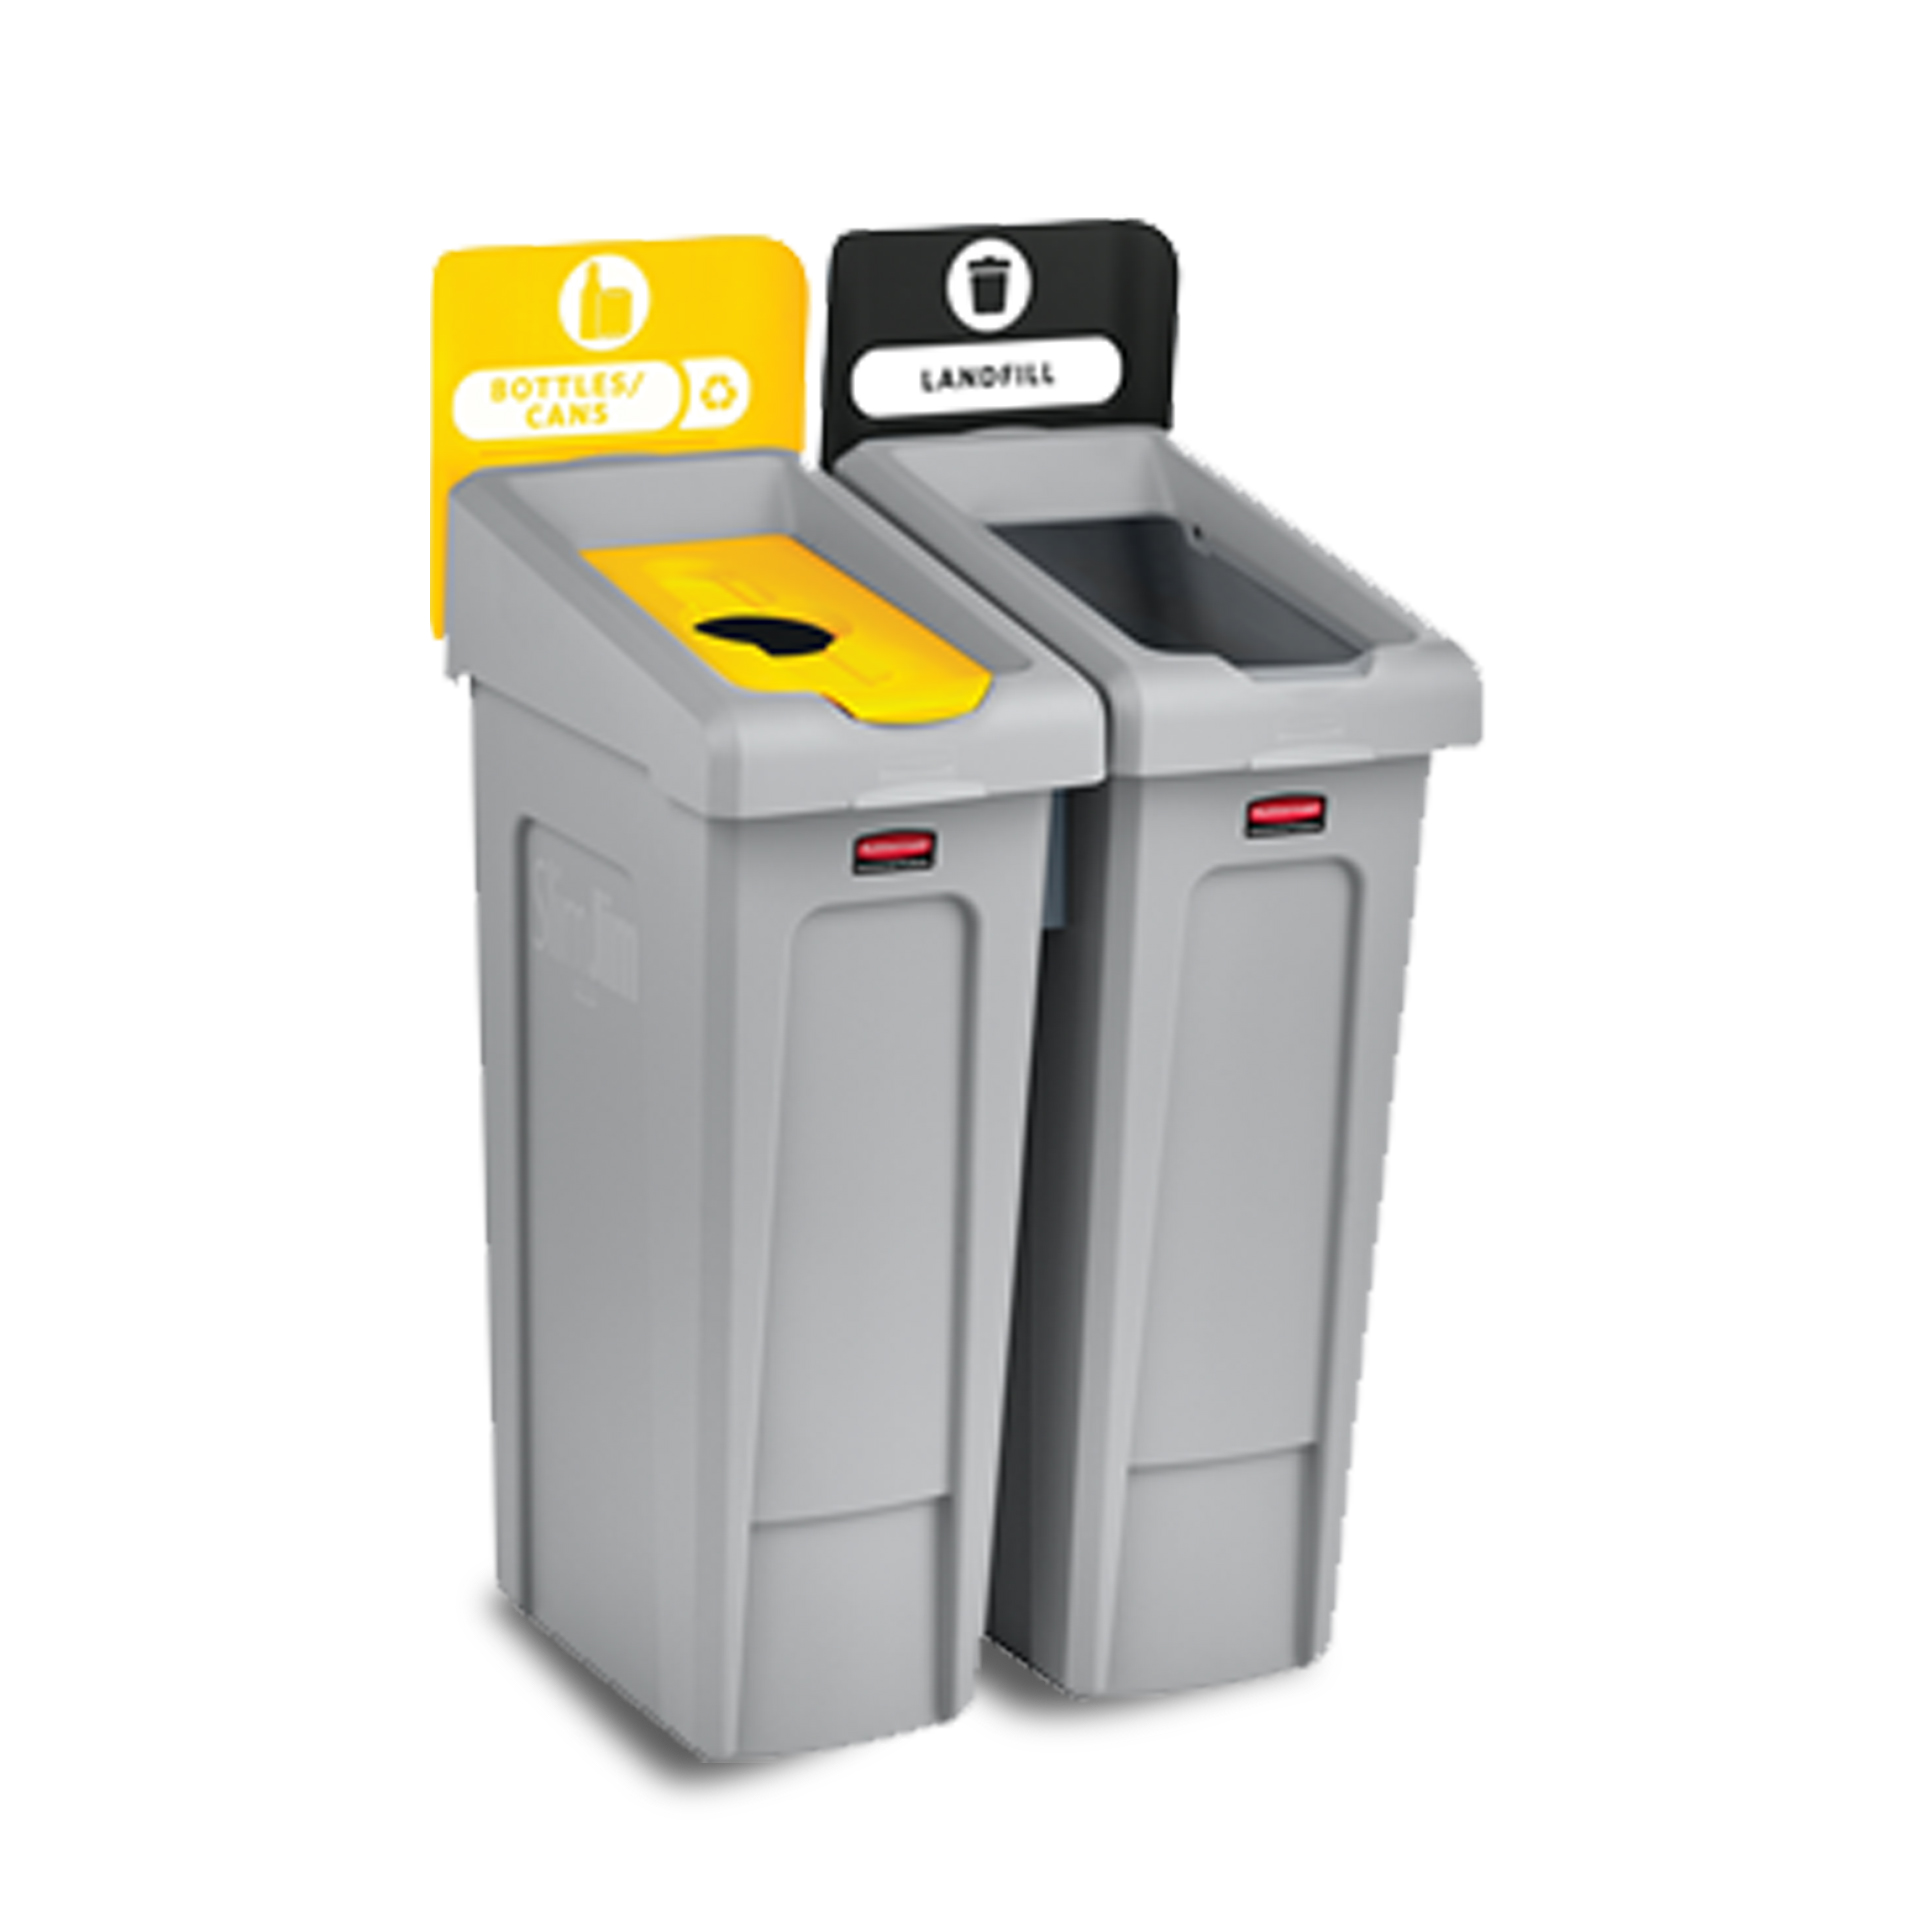 ถังขยะรีไซเคิล แบบ 2 ถัง Slim Jim® Recycling Station สำหรับขยะแบบฝังกลบได้ และขวด หรือกระป๋อง